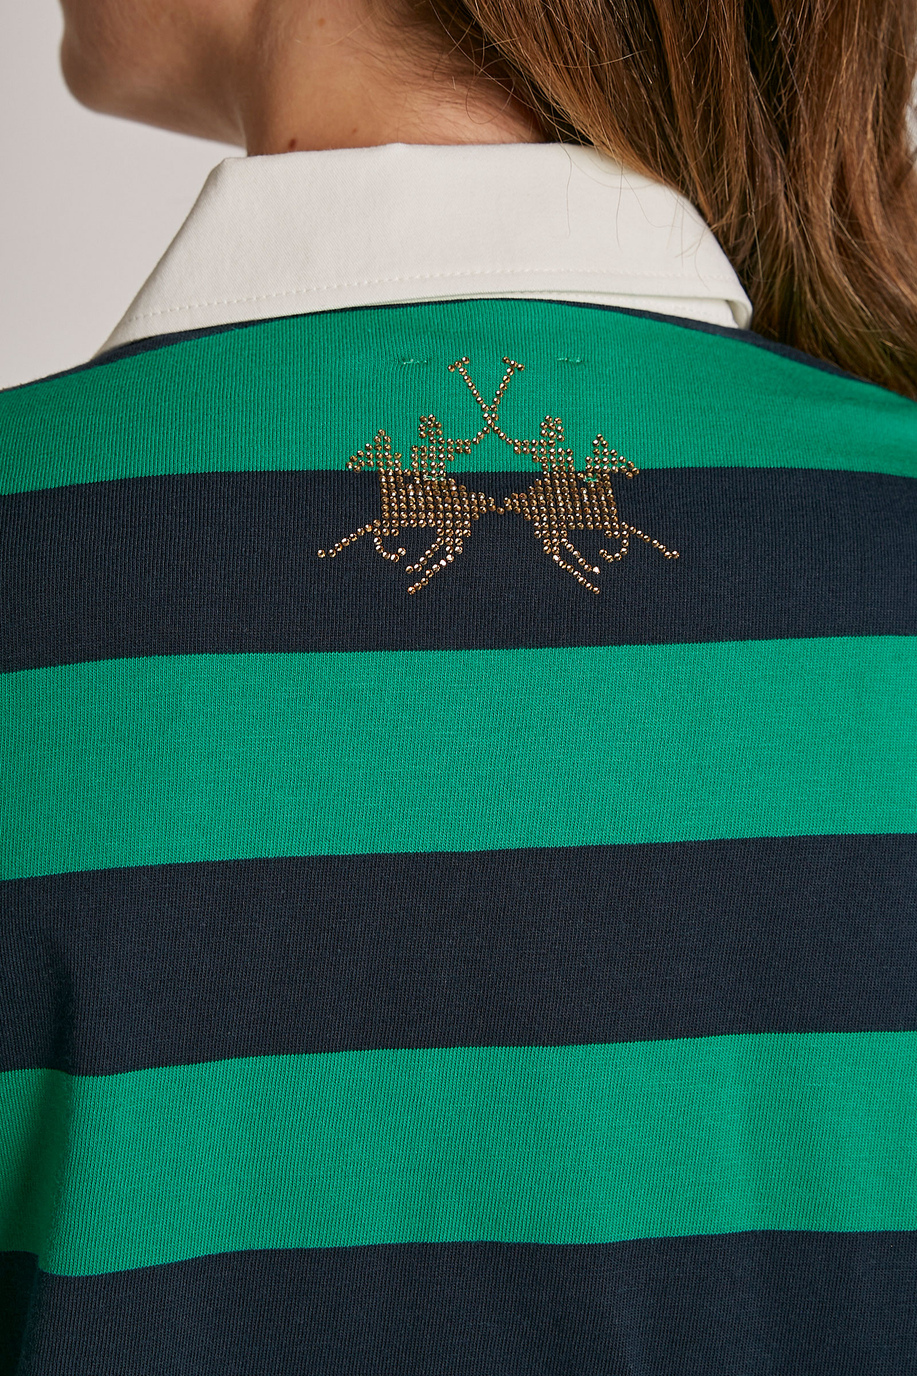 Camiseta de mujer de algodón con logotipo, corte regular